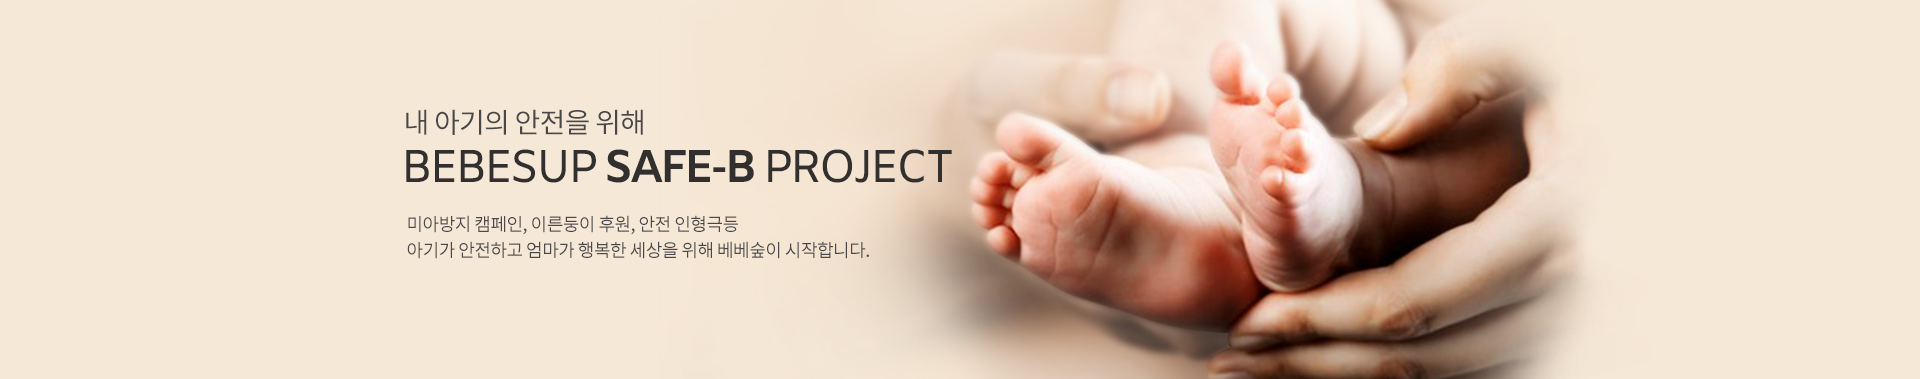 미아 방지 프로젝트